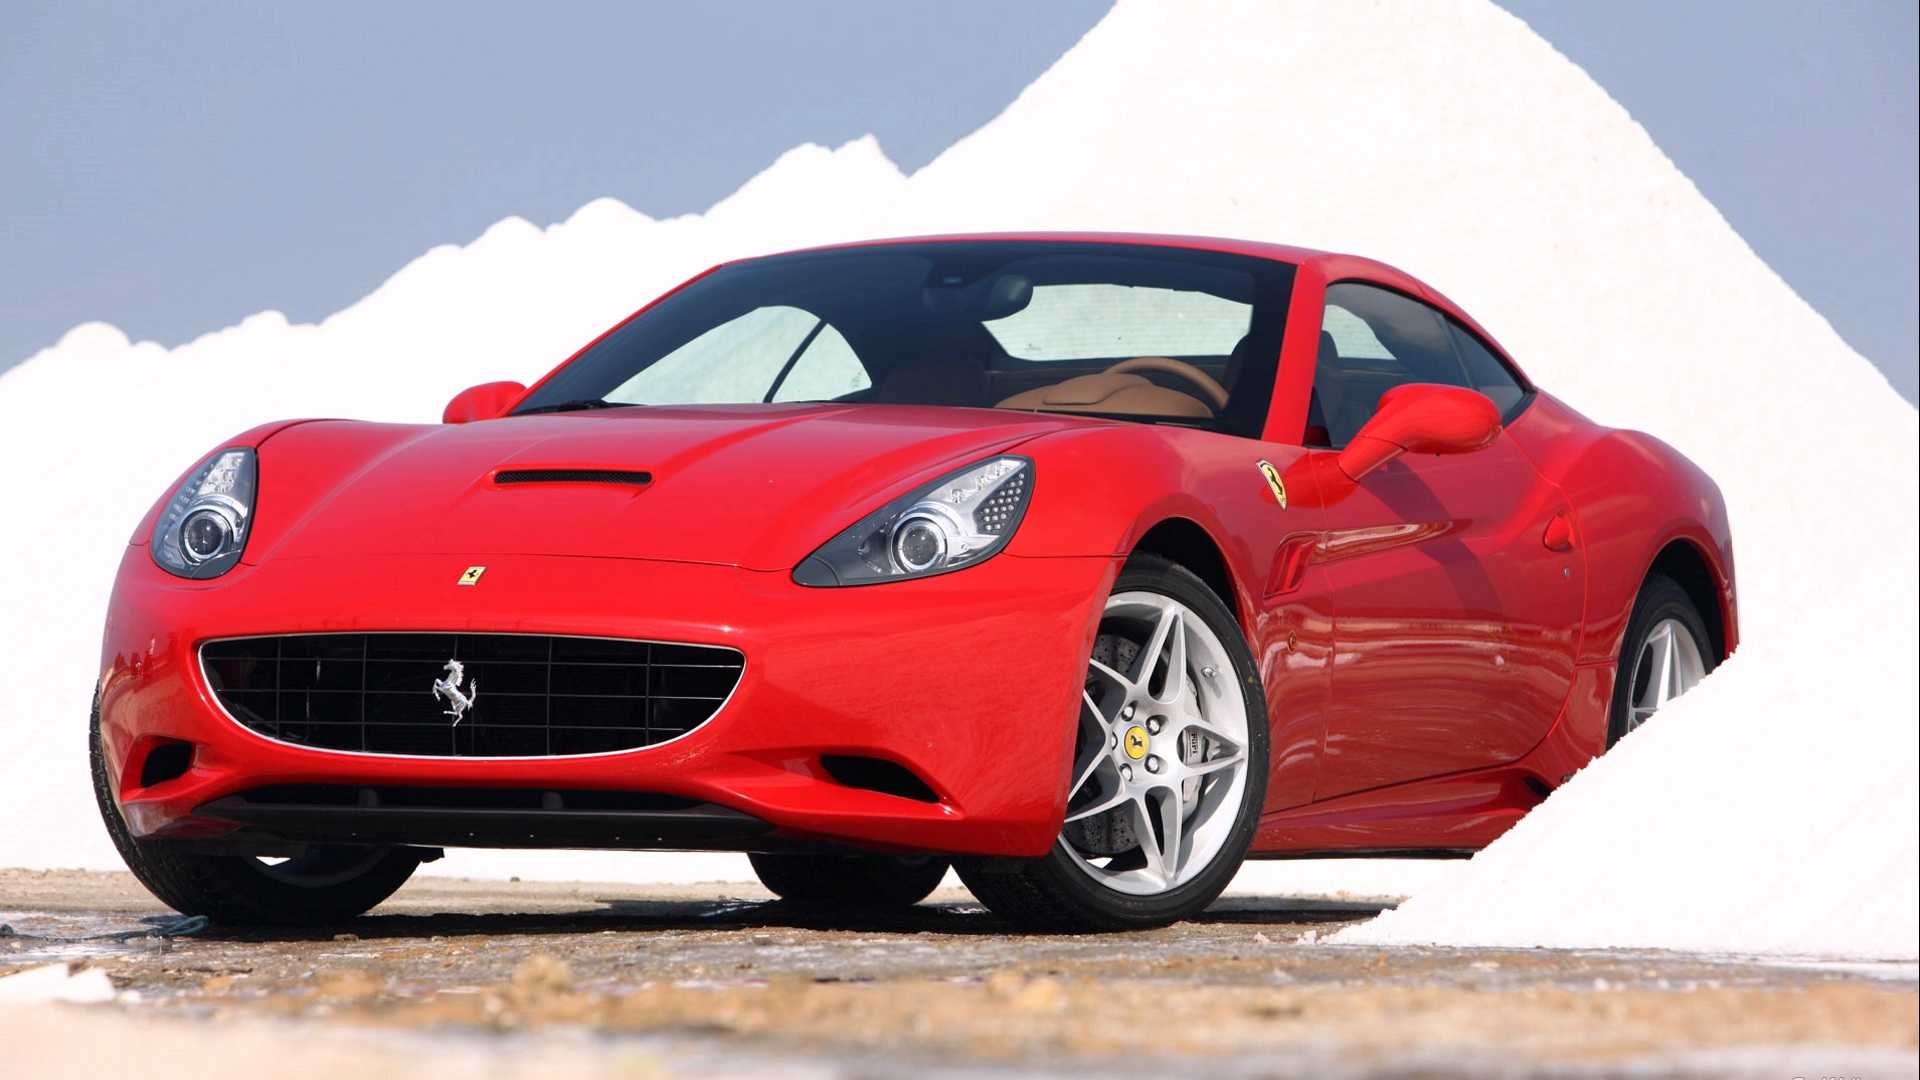 Ferrari - полный каталог моделей, характеристики, отзывы на все автомобили ferrari (феррари)